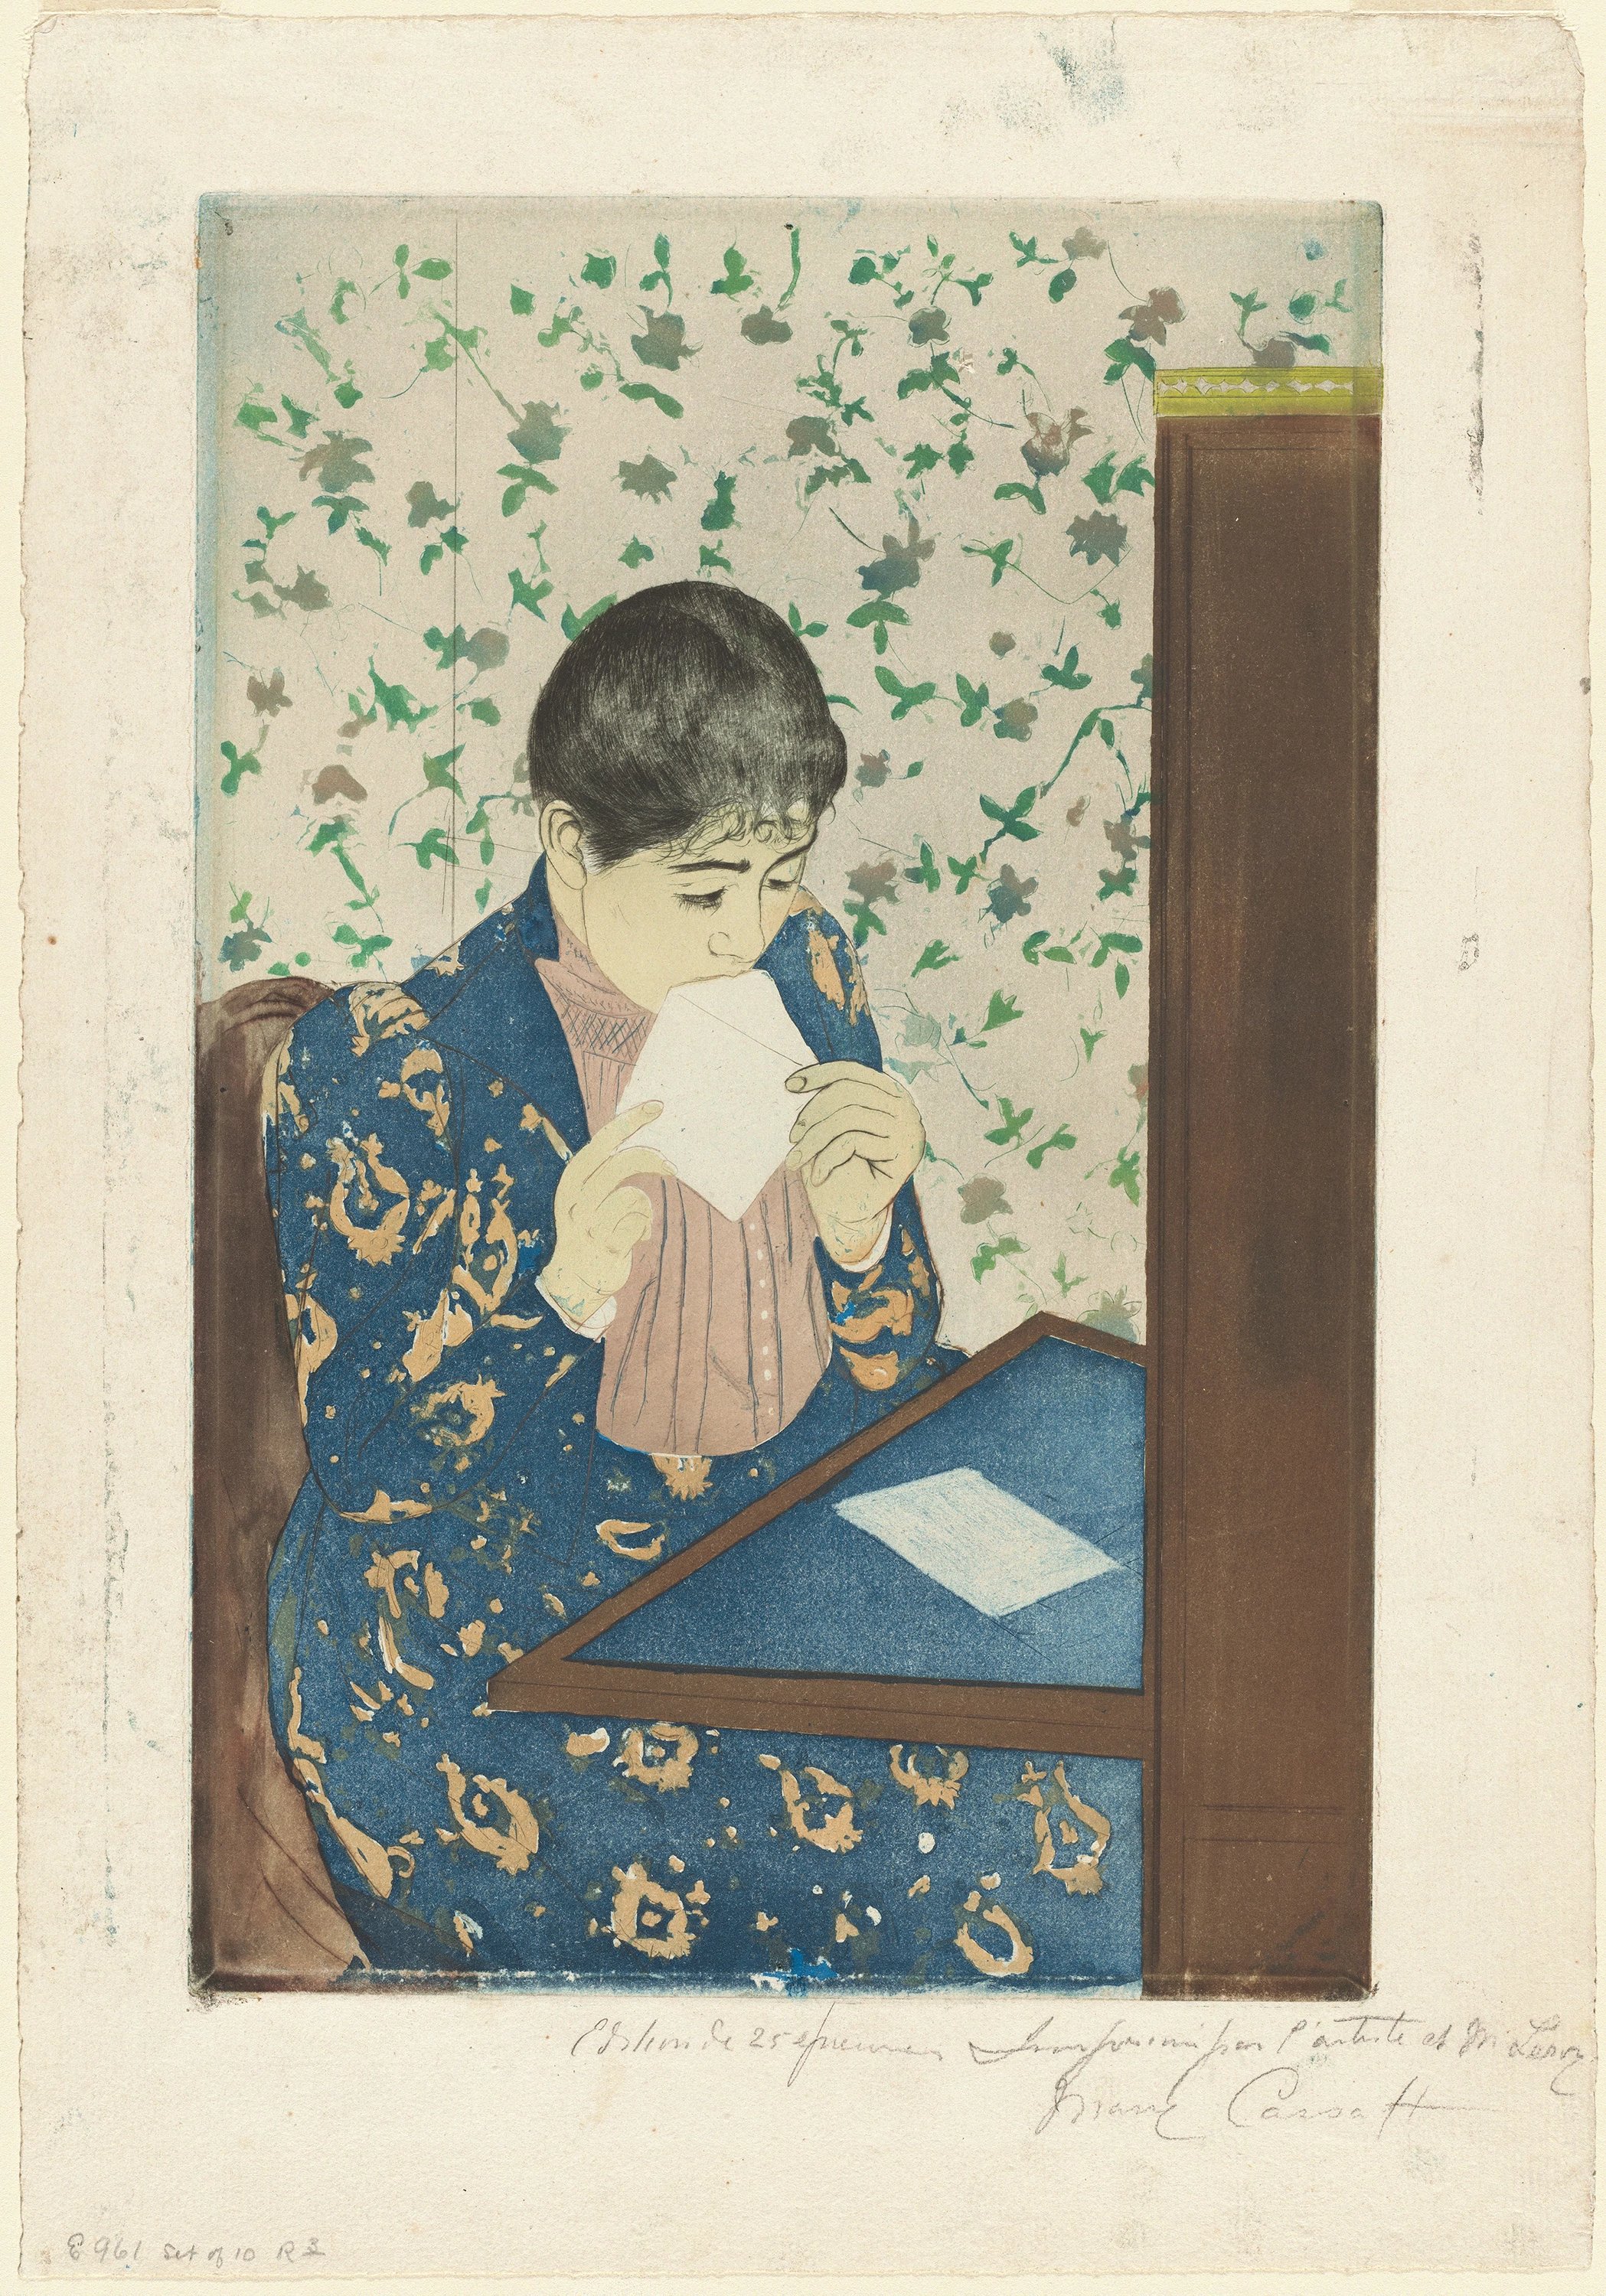 The Letter, Mary Cassatt